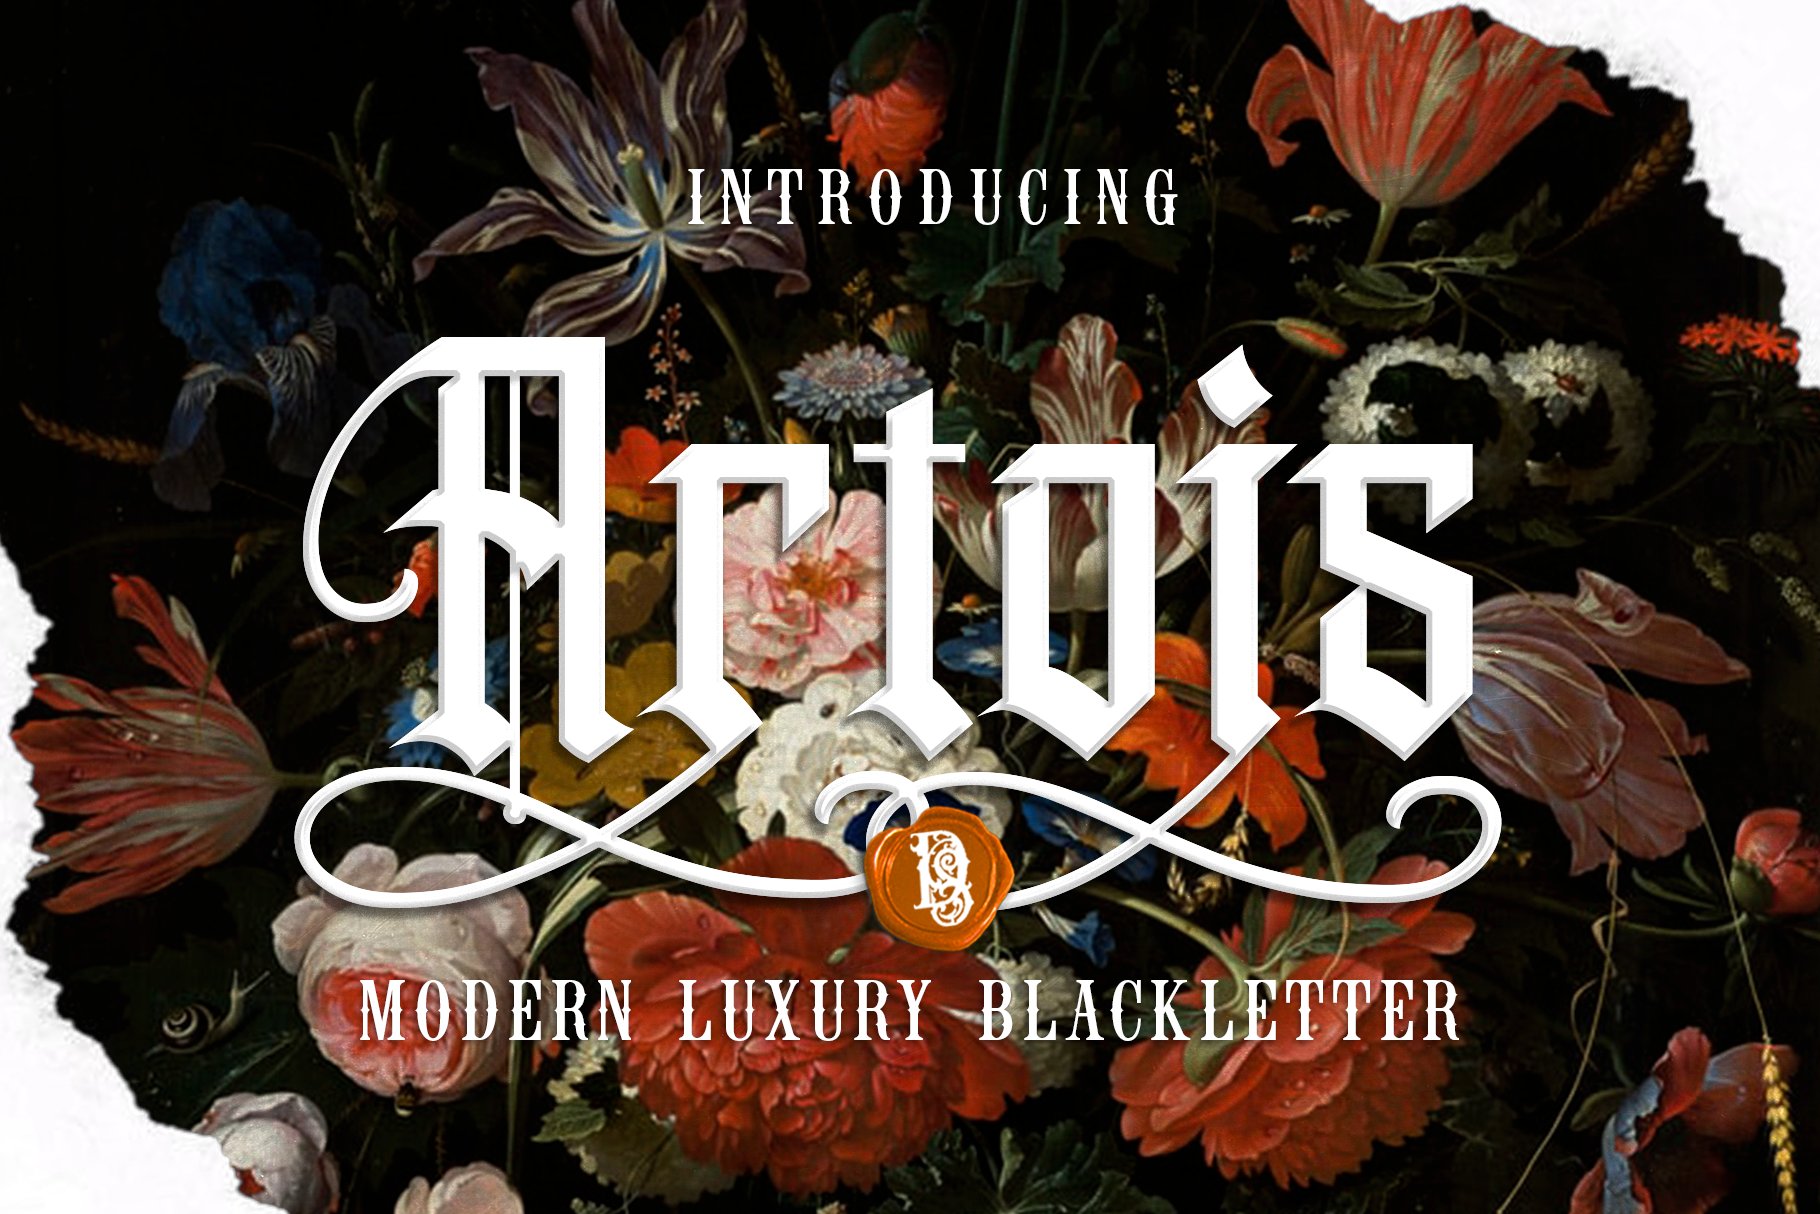 Artois  blackletter cover image.